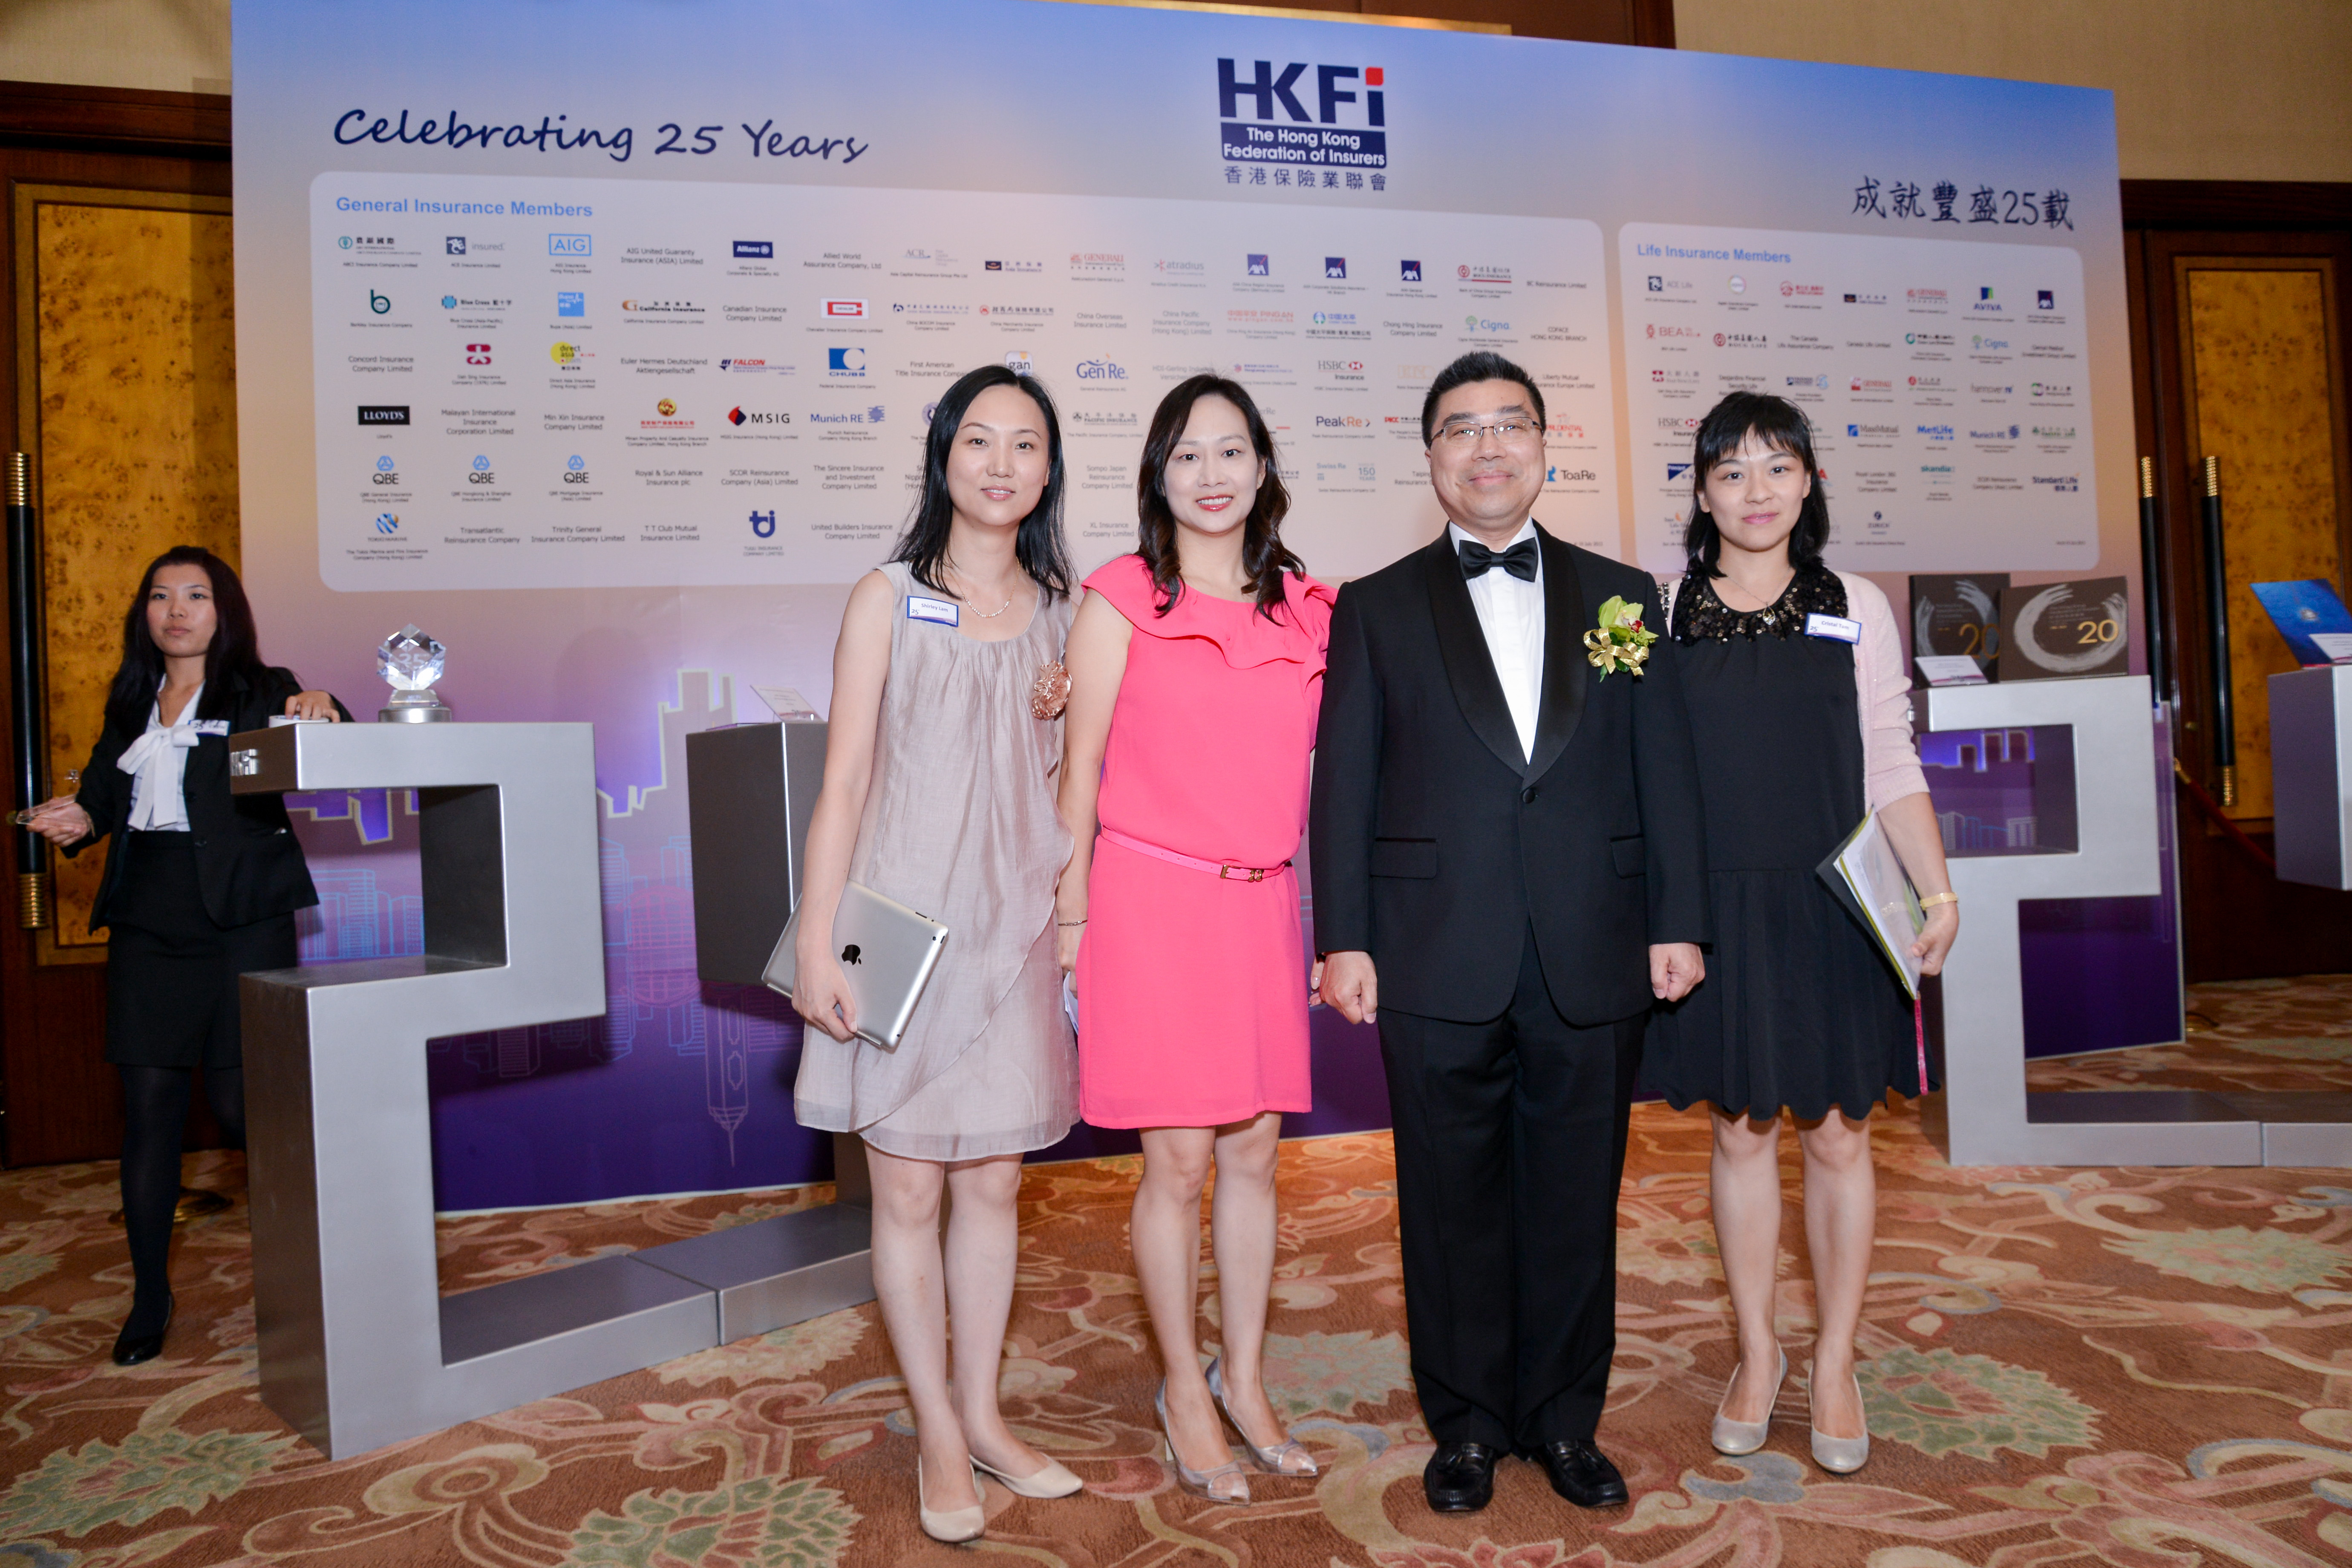 HKFI Celebrating 25 Years - Cocktail (2)